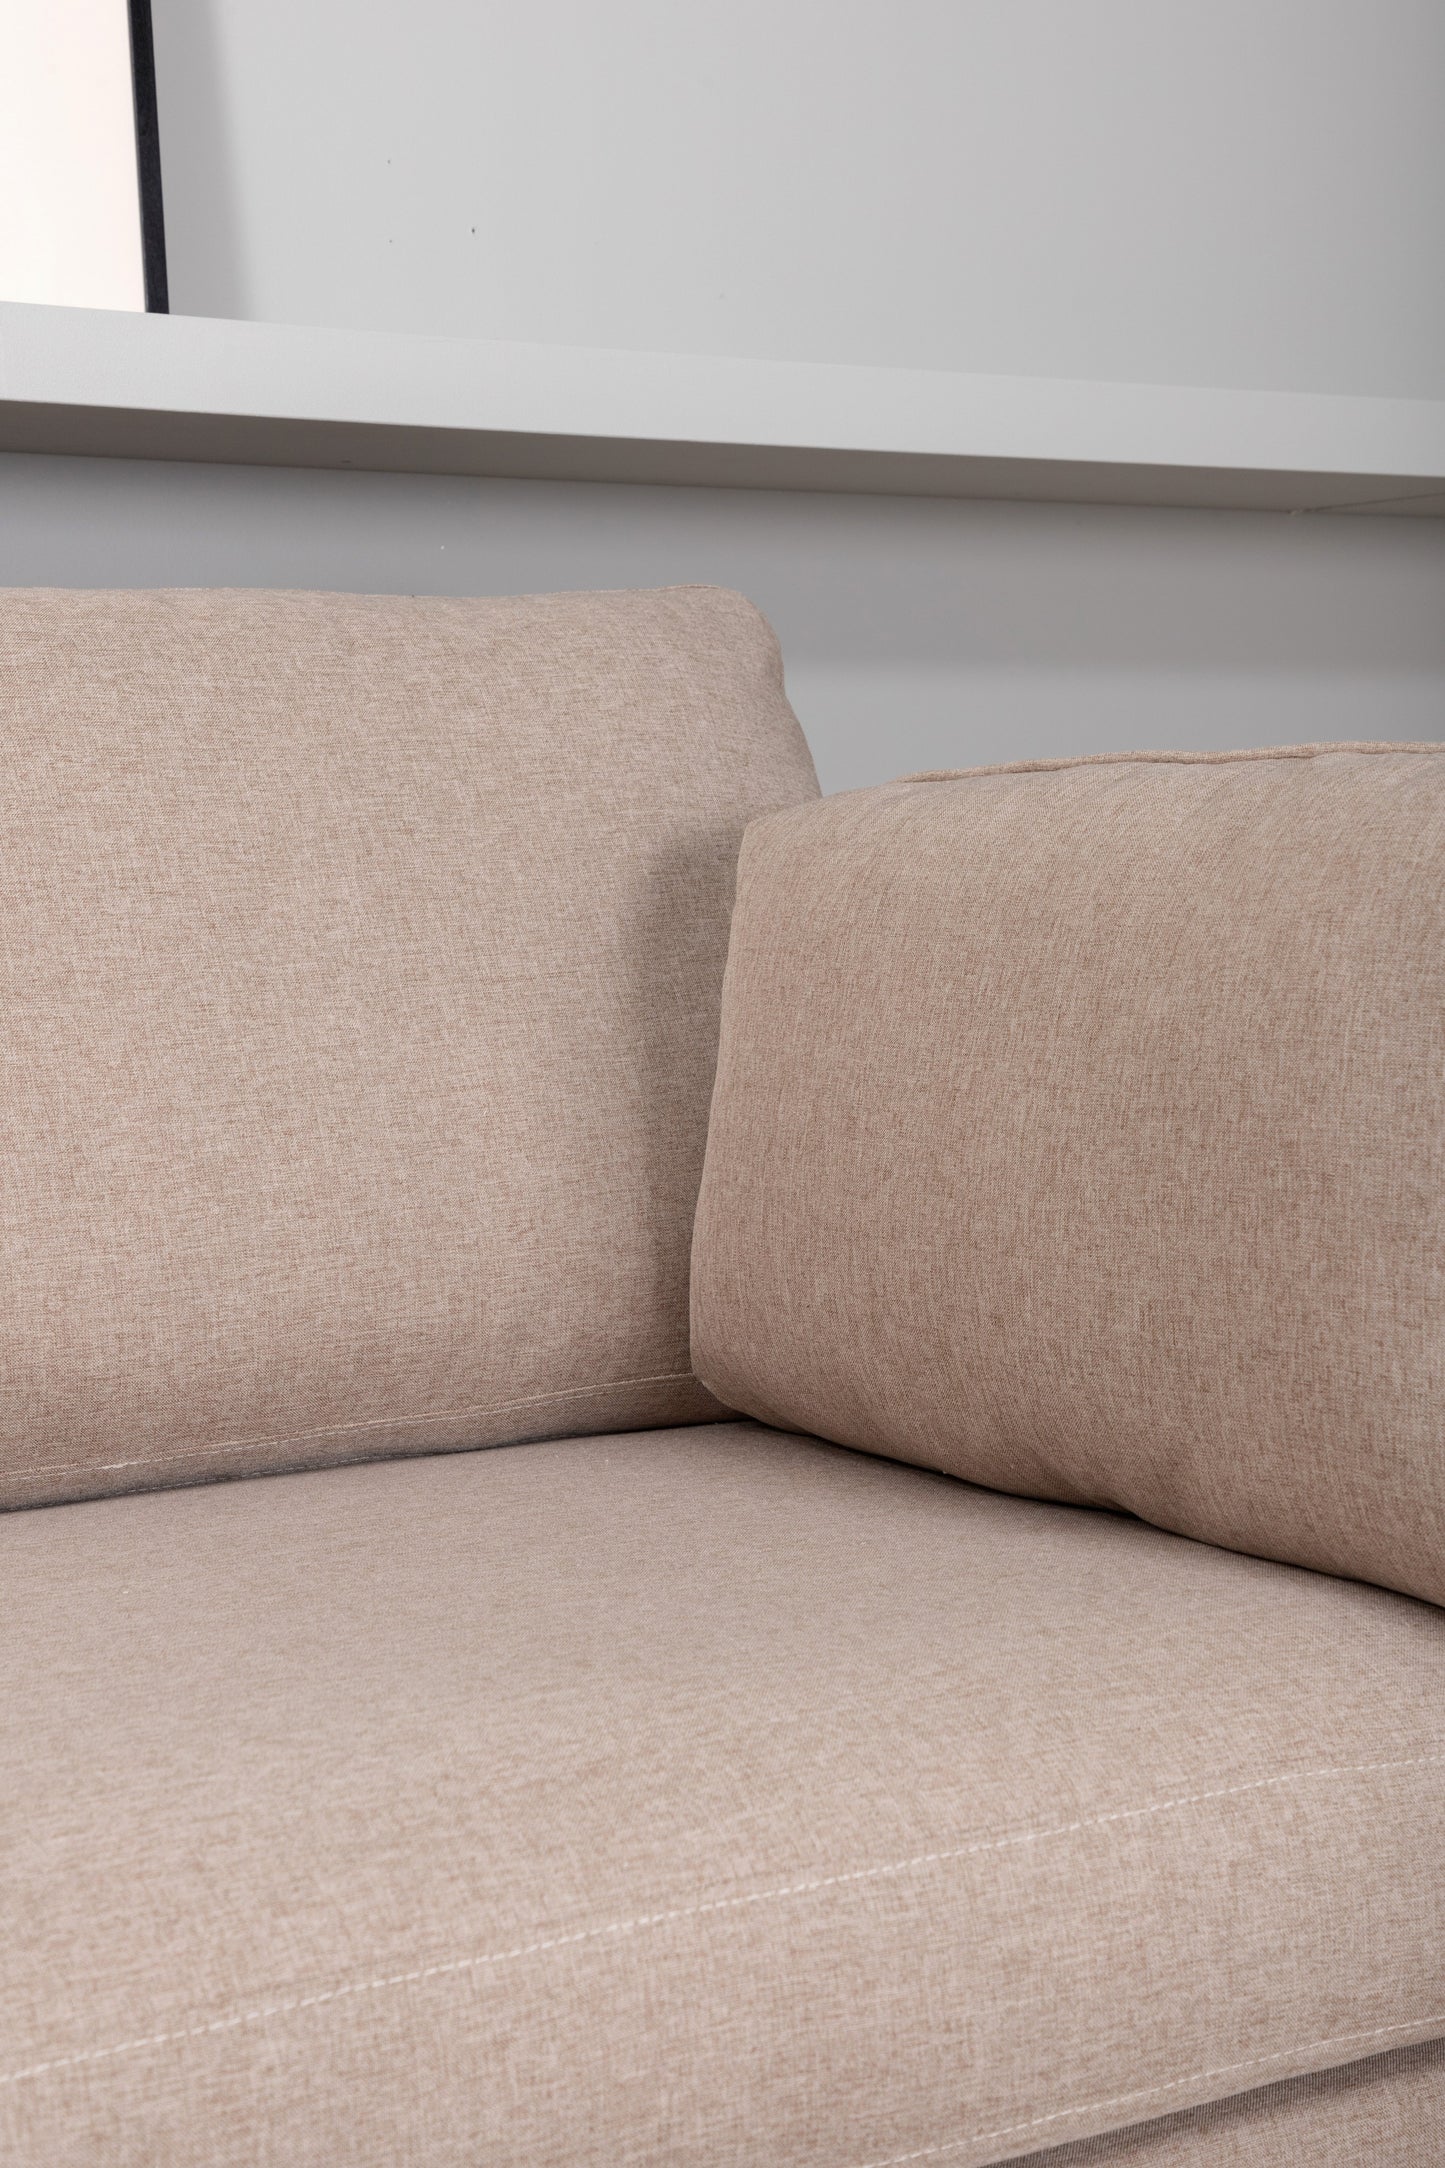 Venture-Design | Boom Sofa - Schwarz / Brauner Stoff